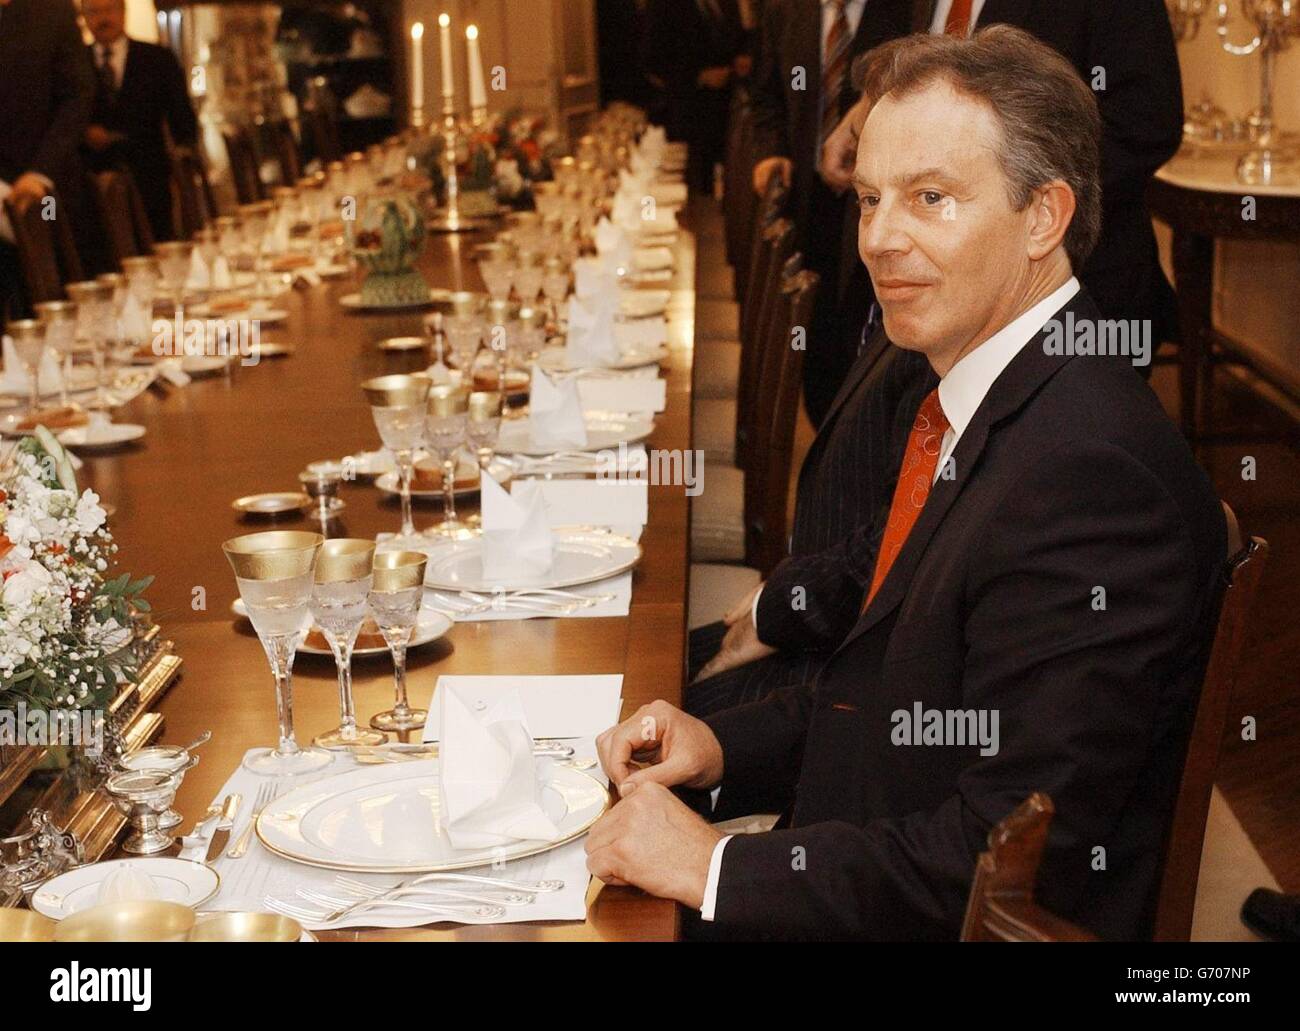 Il primo ministro Tony Blair attende pazientemente la cena come ospite del primo ministro turco Recep Erdogan ad Ankara, dove partecipa a un vertice. In una conferenza stampa congiunta, Tony Blair ha chiesto la fine delle sanzioni commerciali e la revoca del divieto di volo commerciale verso Cipro settentrionale controllata dalla Turchia. Foto Stock